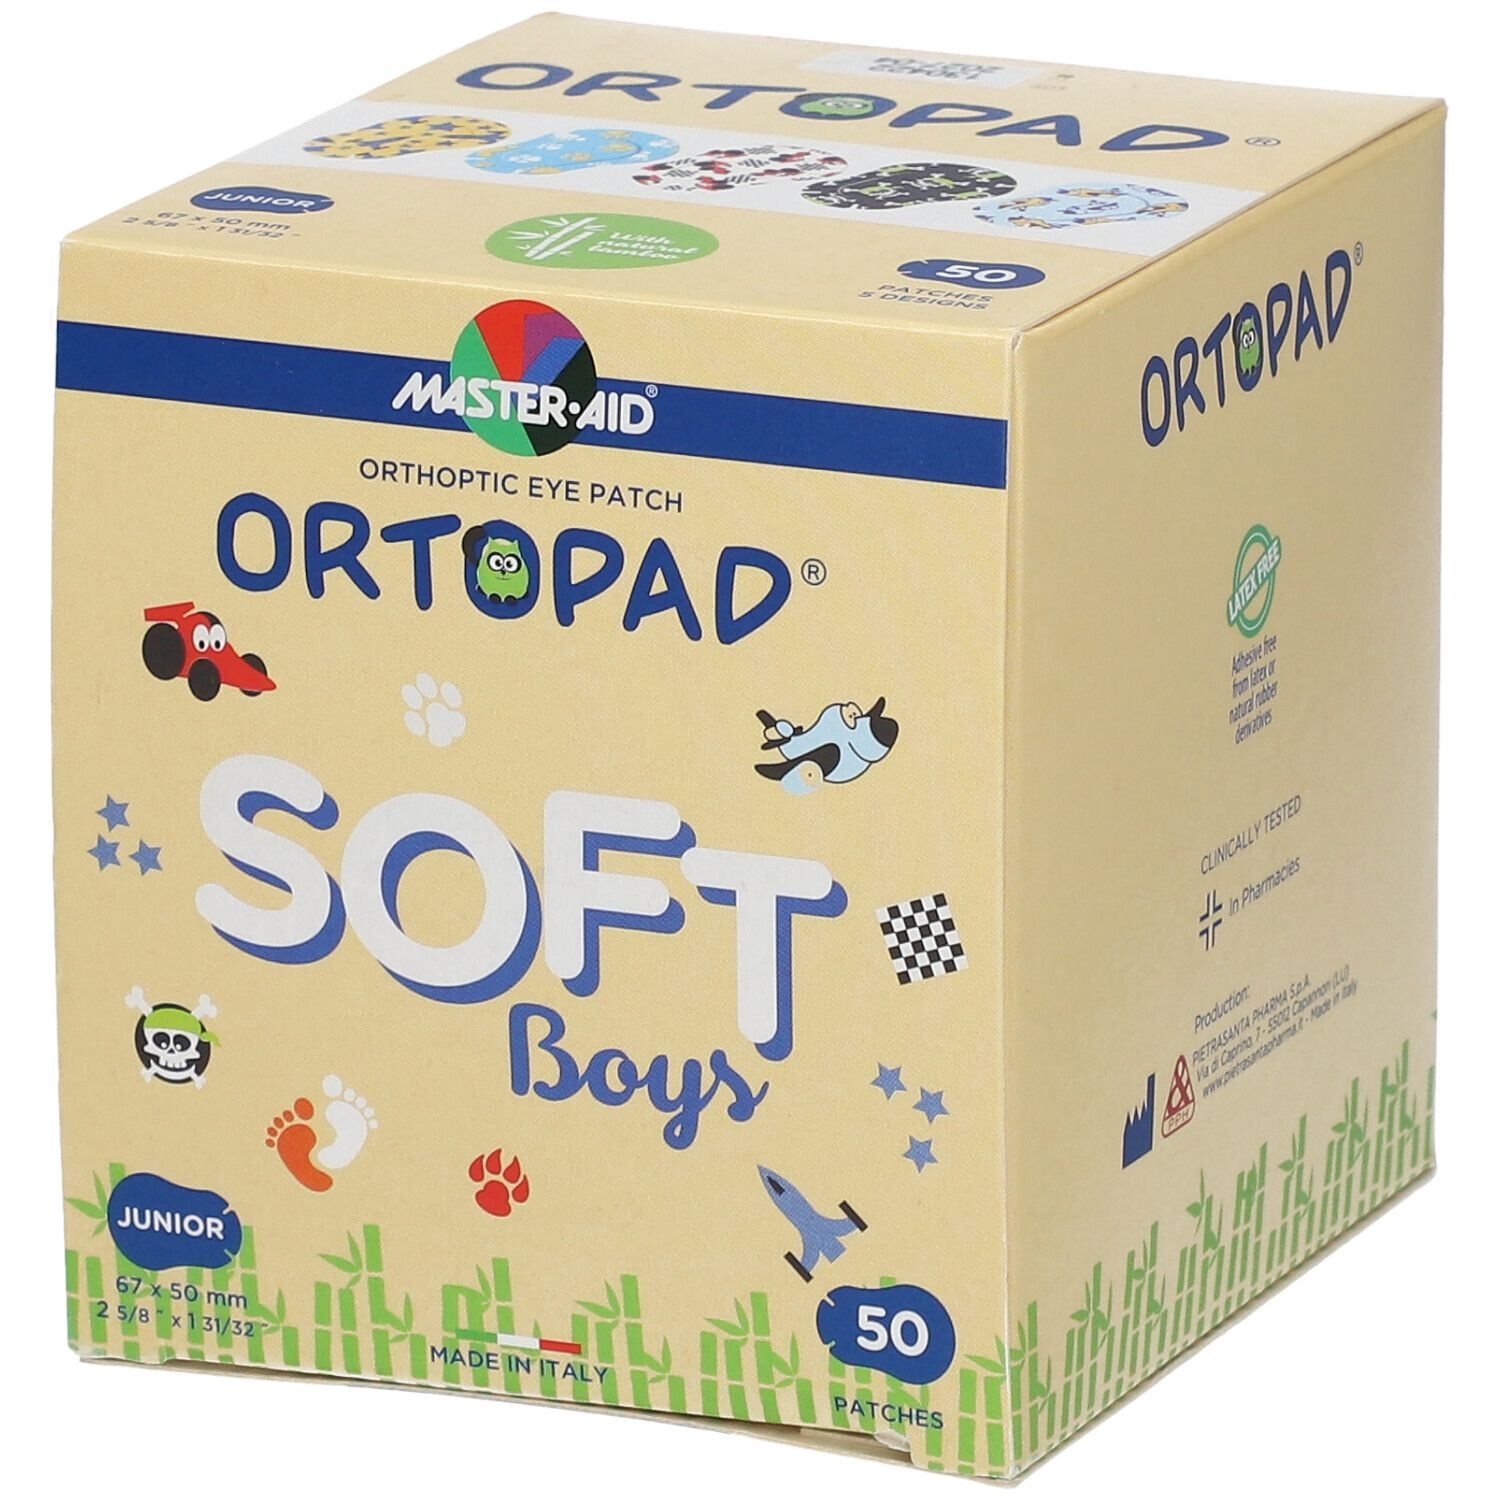 Ortopad® Soft Boys Junior autres67 x 50 mm 50 pc(s) pansement(s)